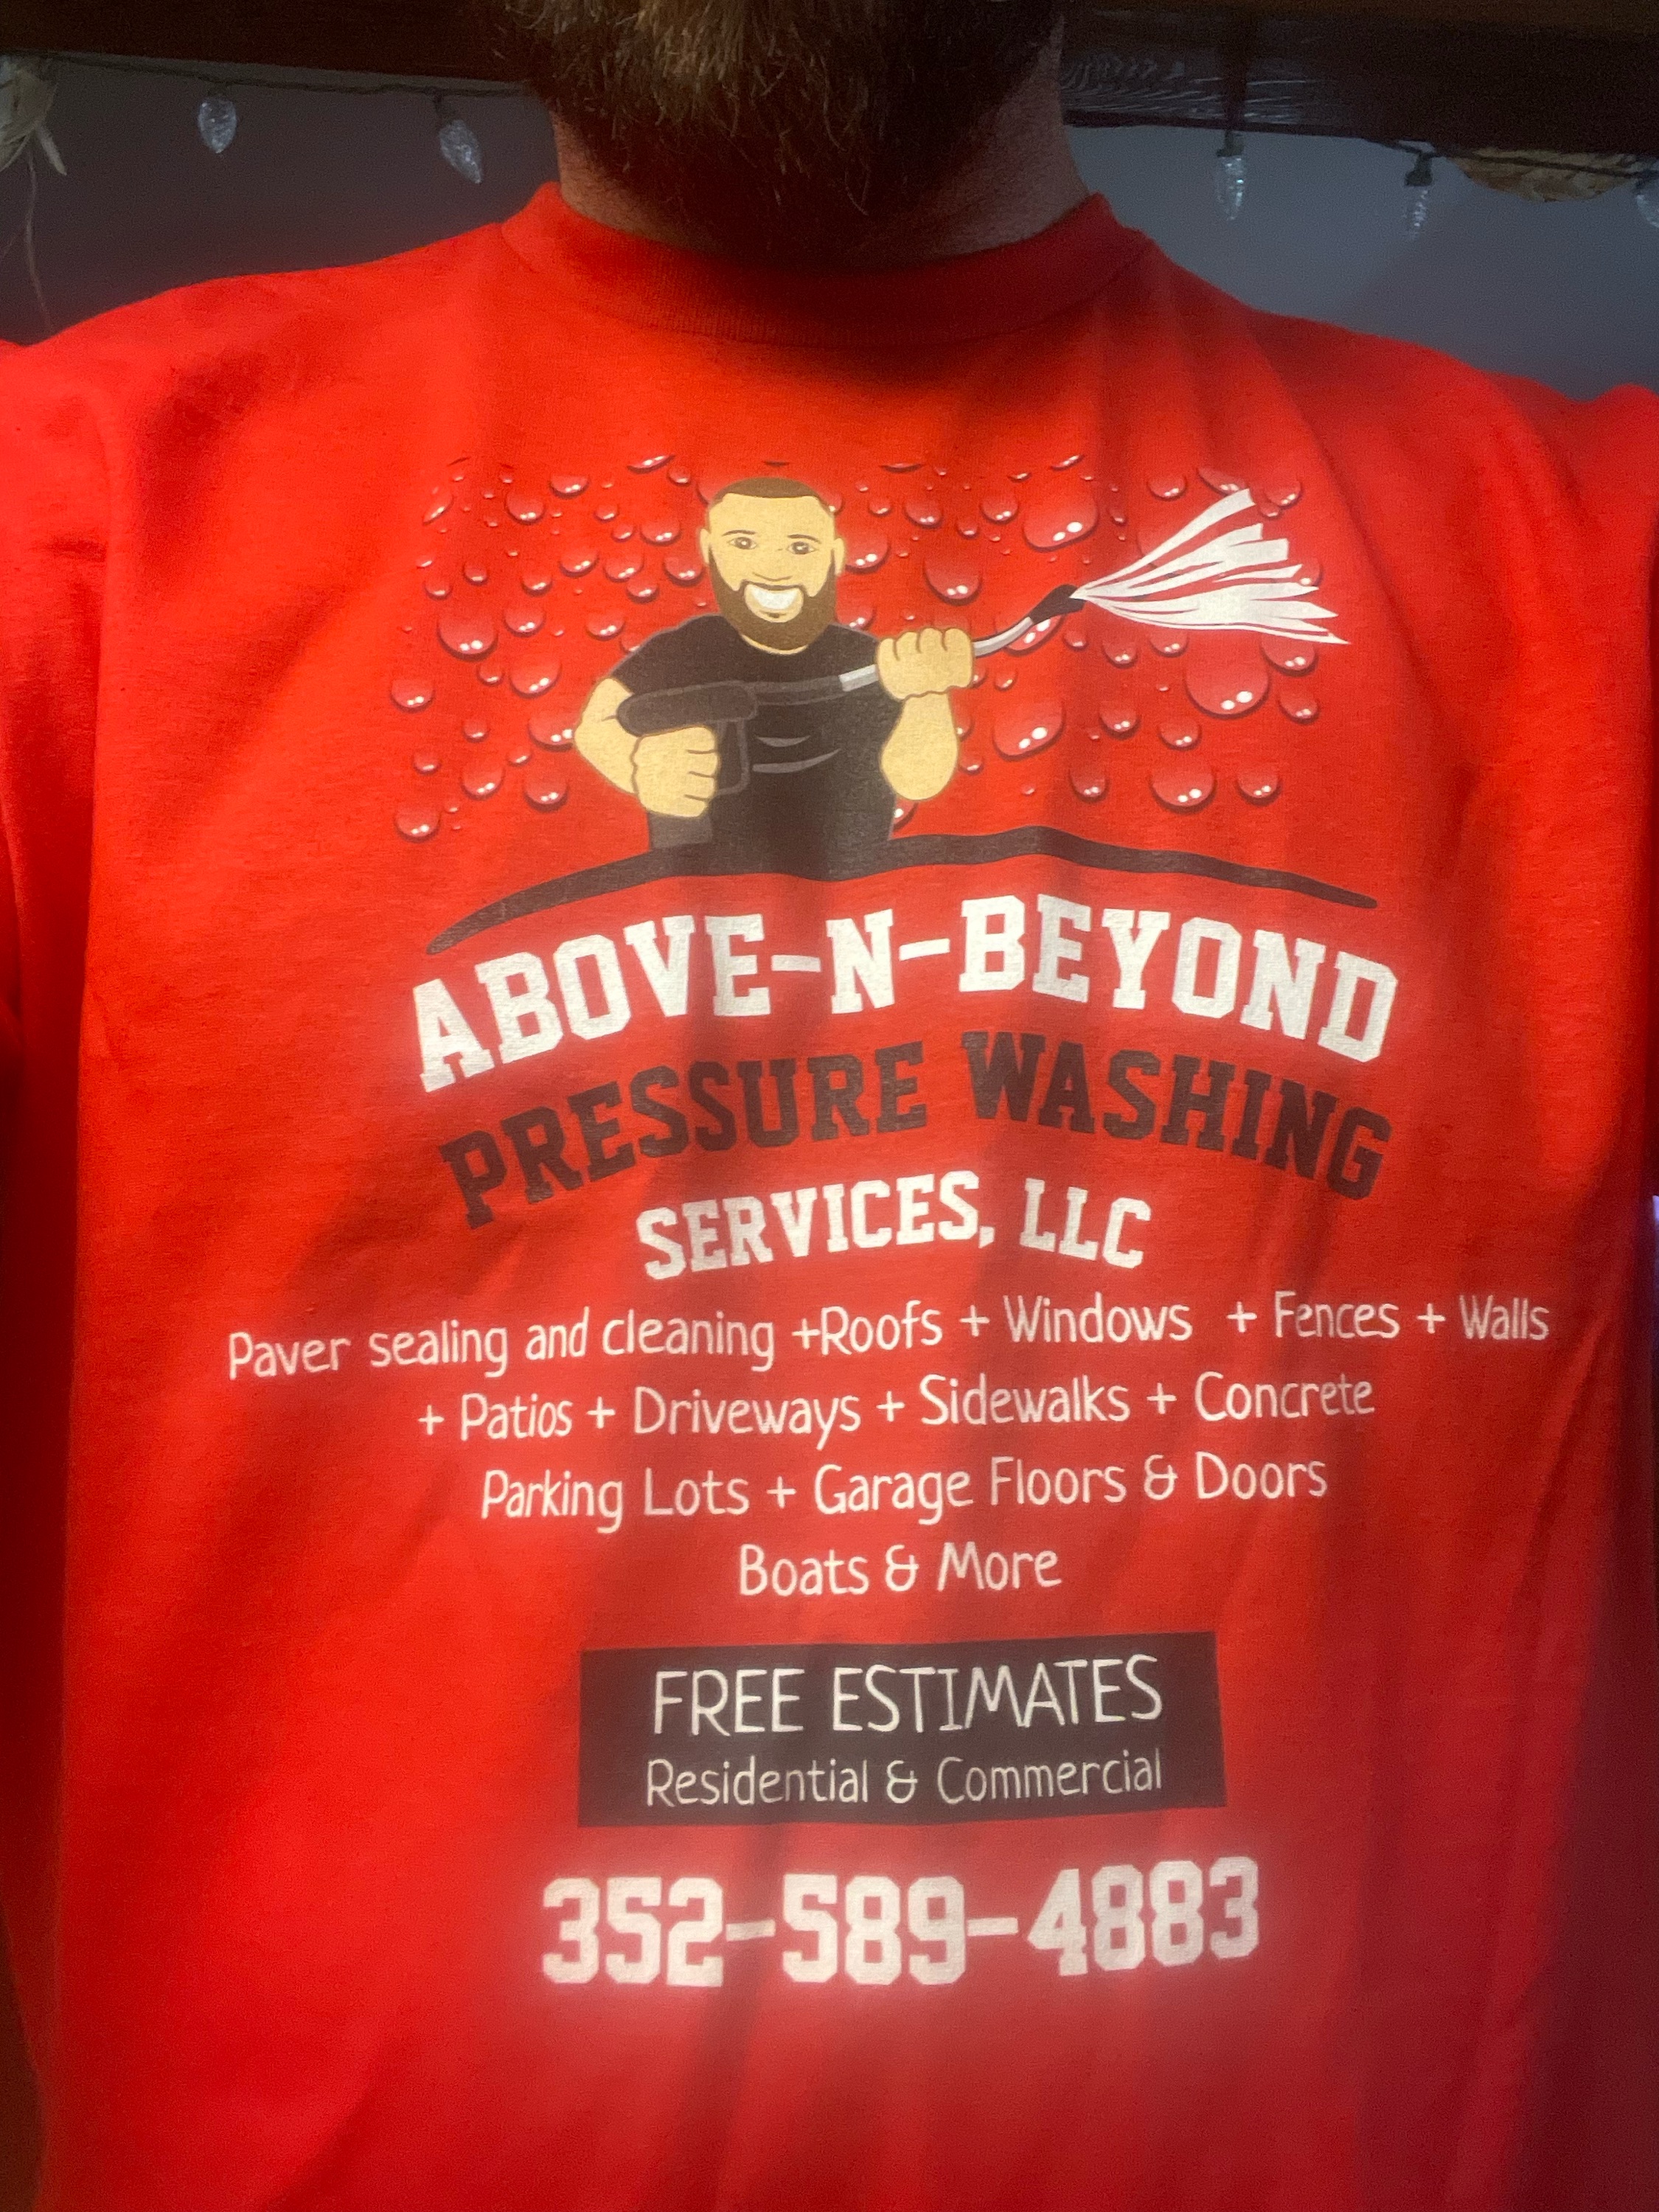 Above-N-Beyond Pressure Washing Logo